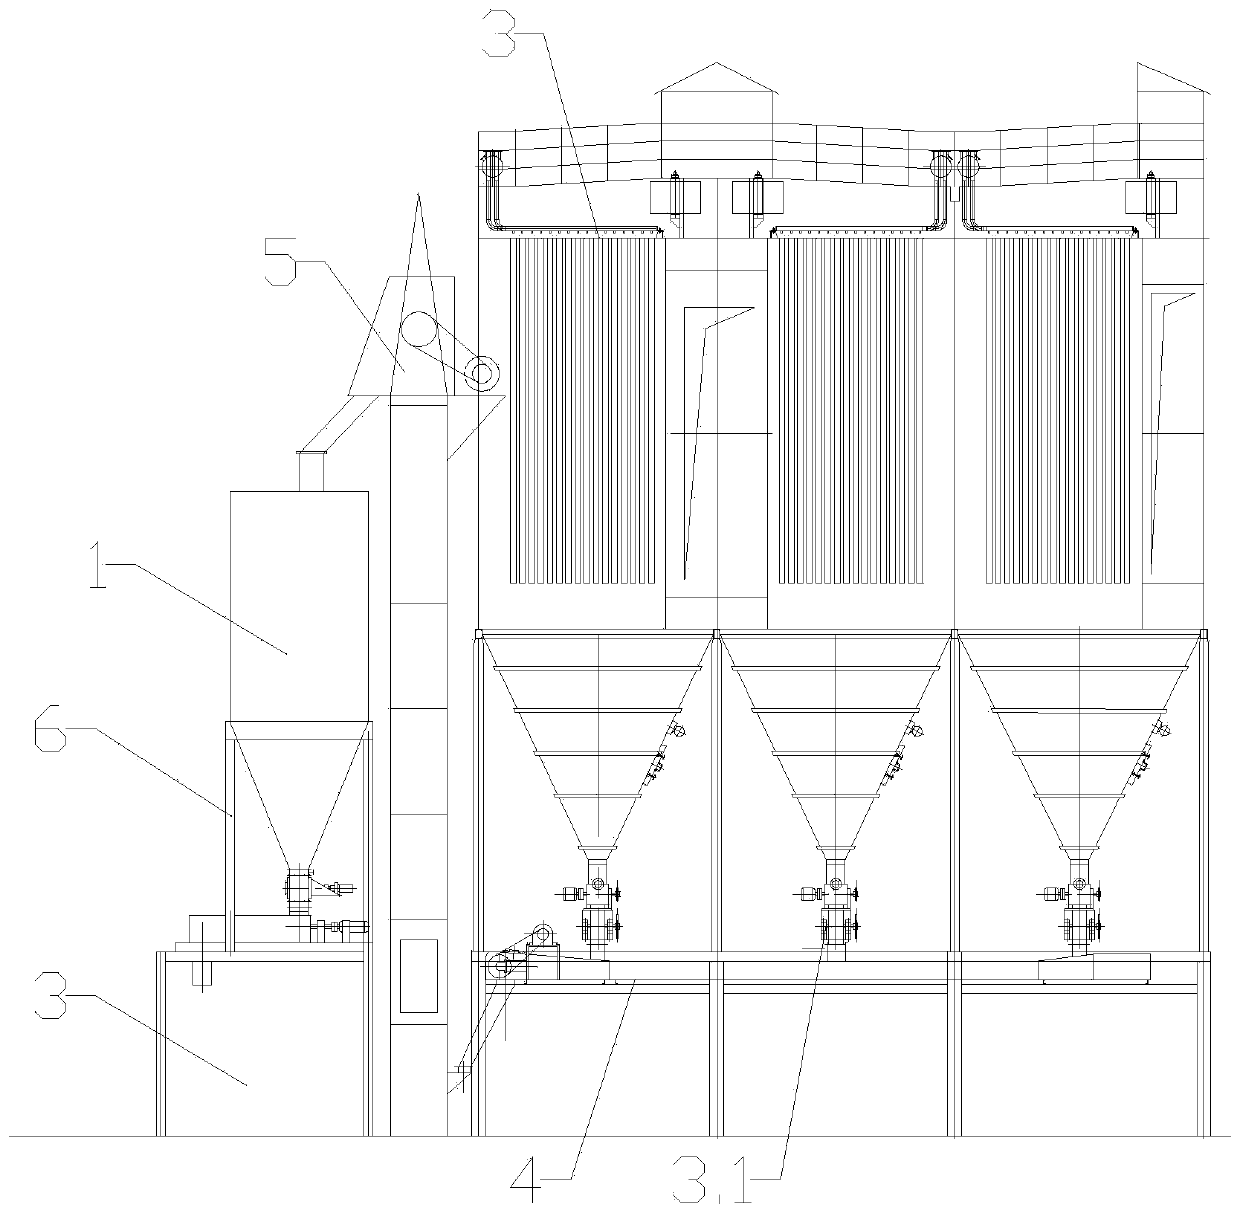 Blast furnace front dedusting system